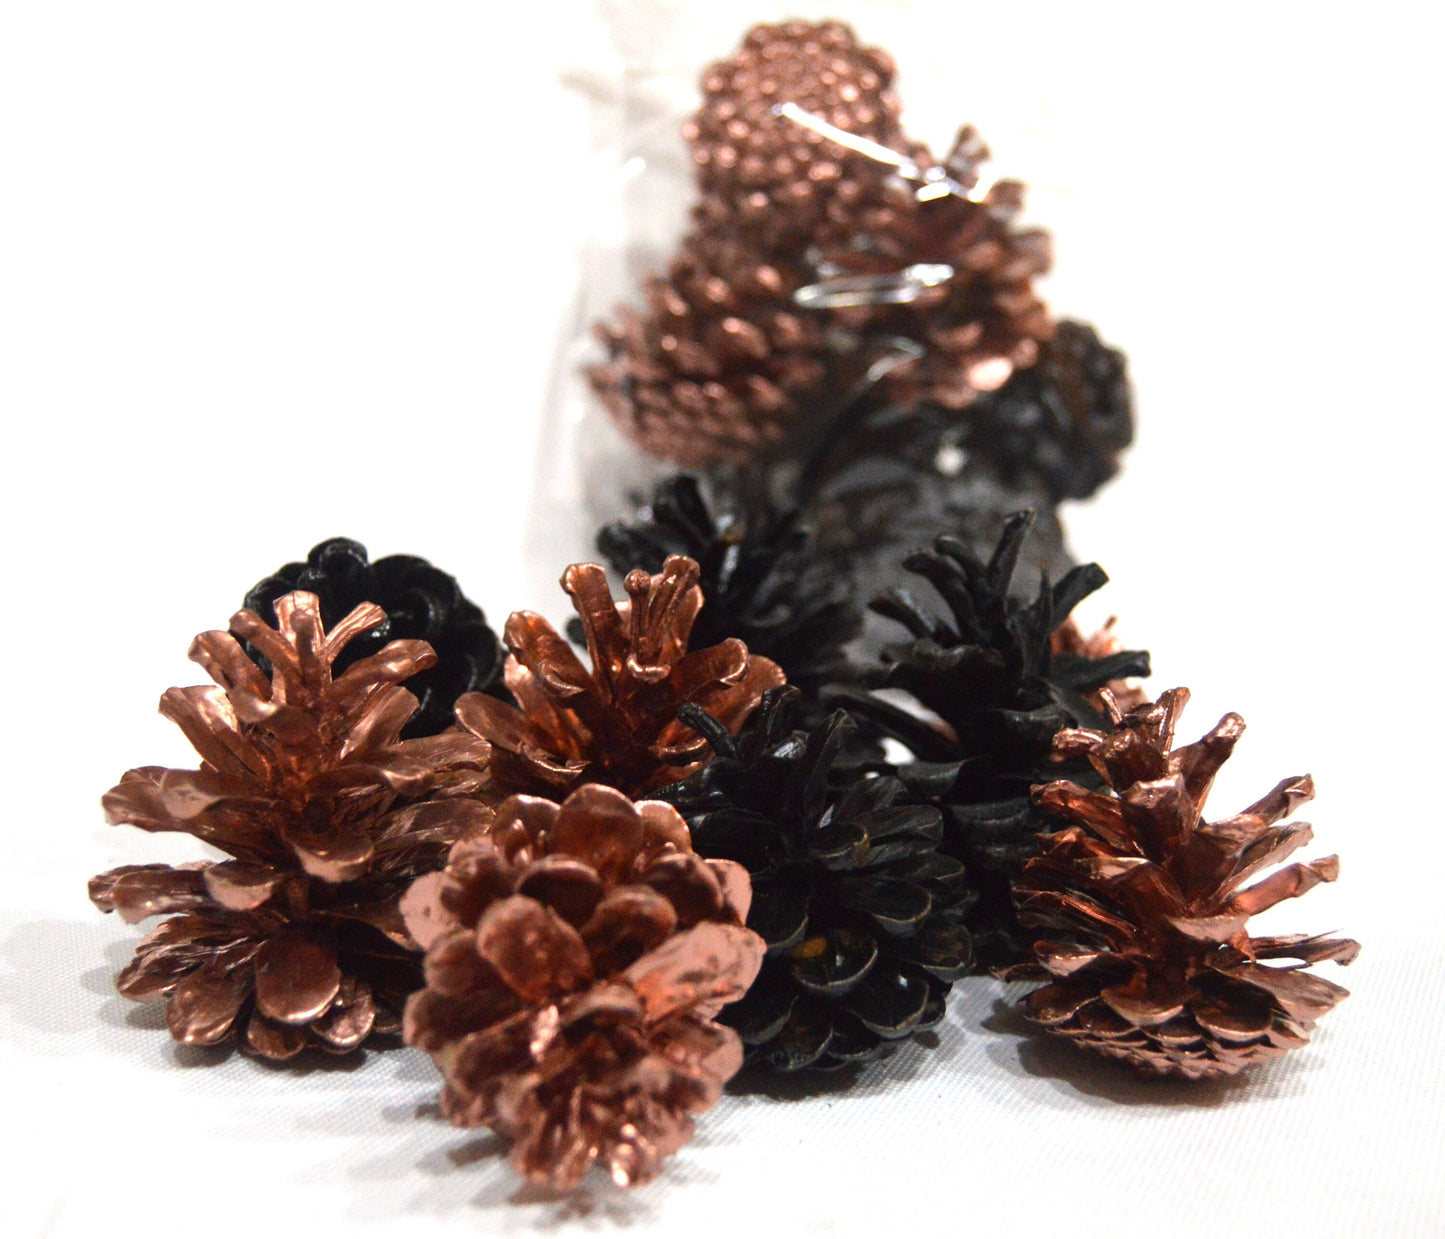 Black & Copper Luxury Pine Cones 4-8 cm